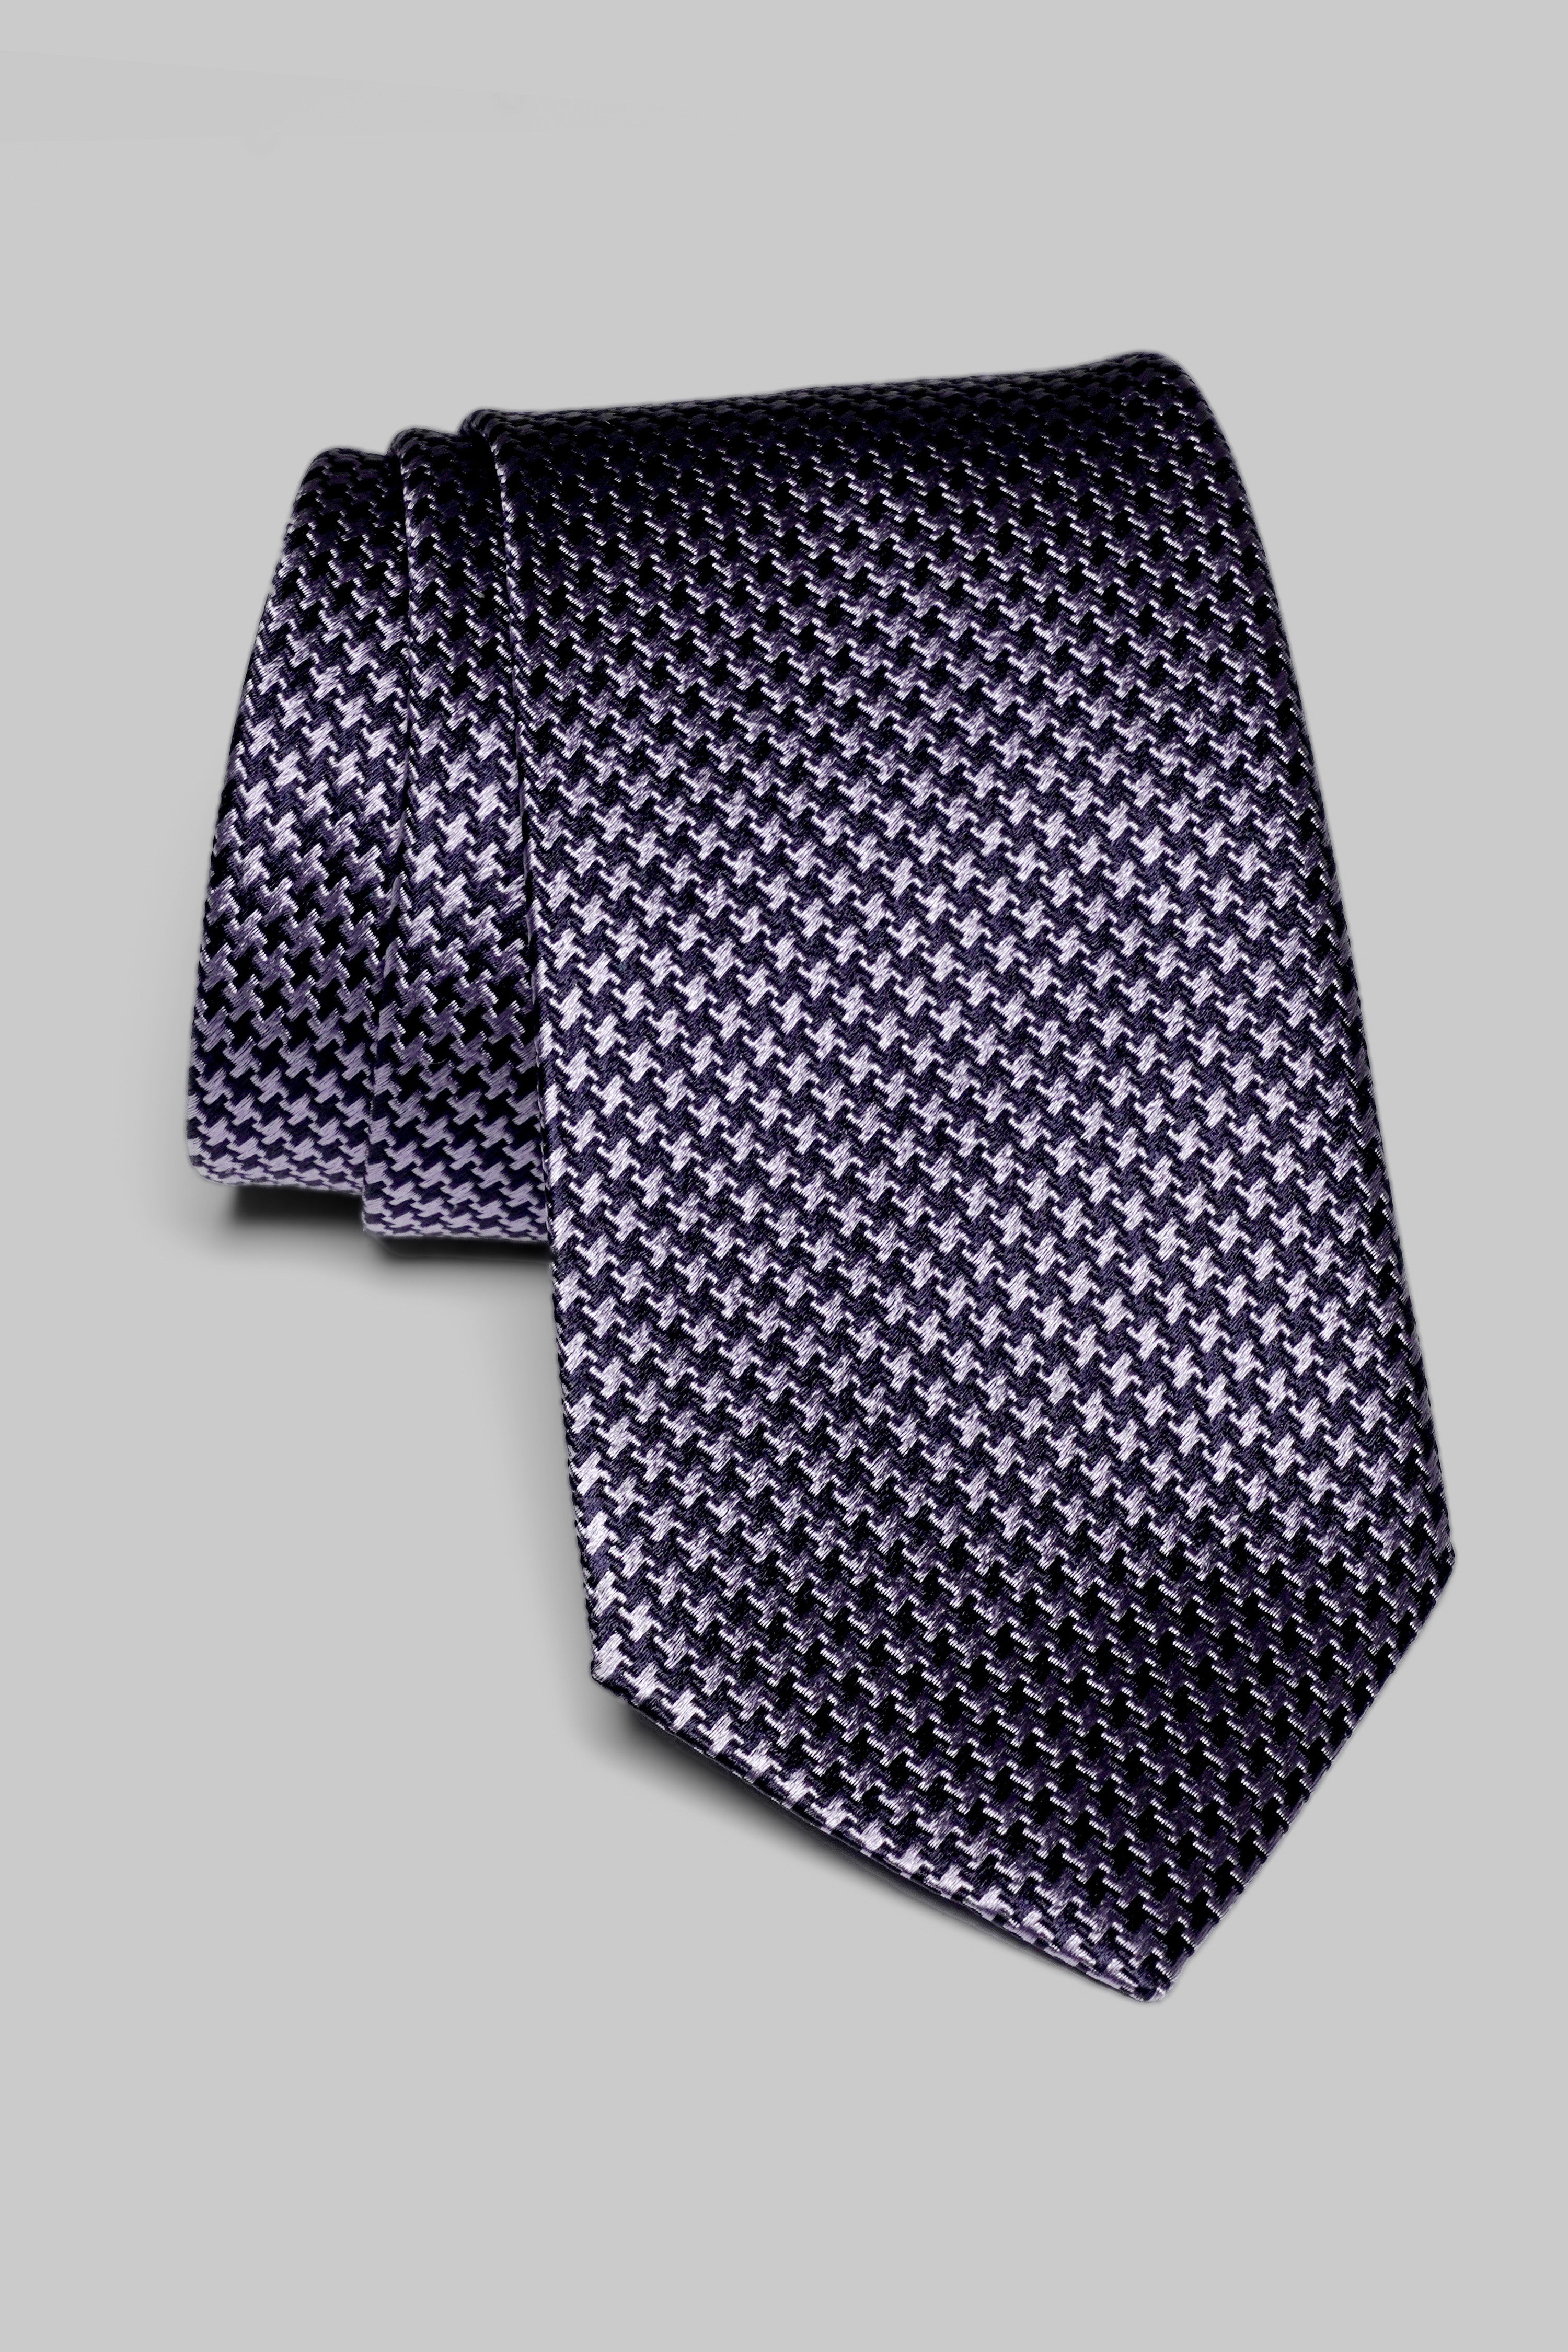 Vue alternative Forden cravate pied-de-poule en violet